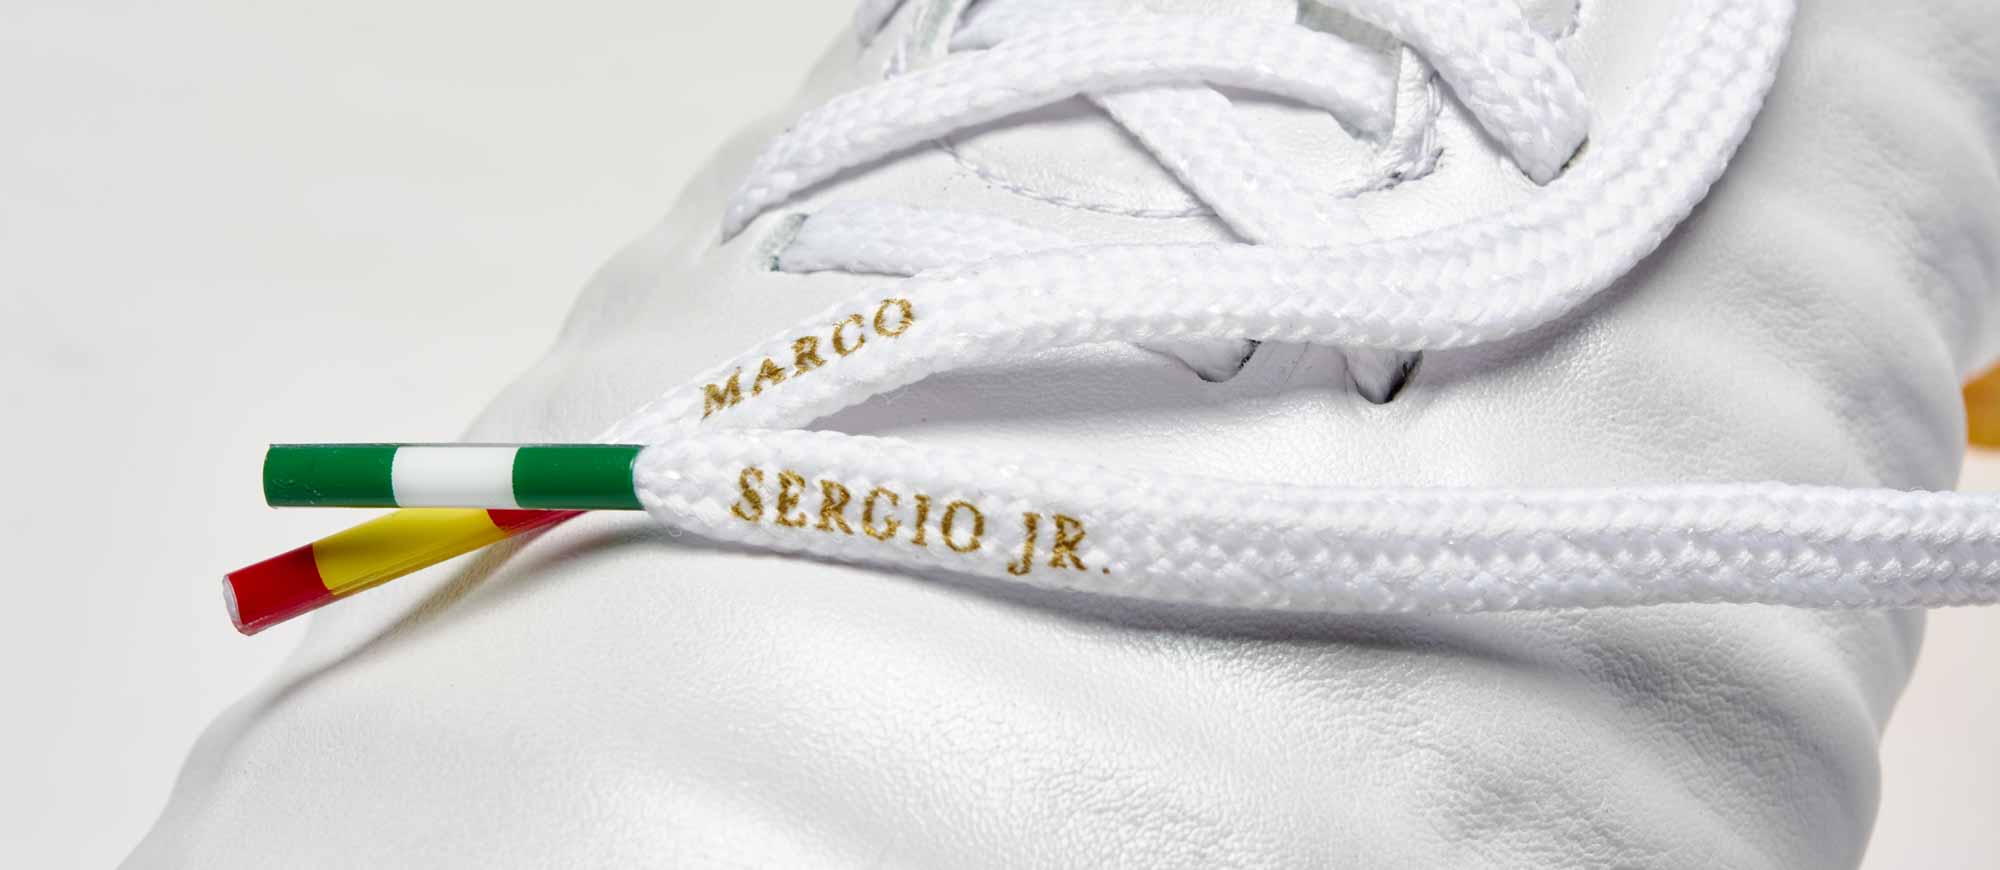 Adviento salario República Nike Tiempo Legend VII - Sergio Ramos Soccer Cleats